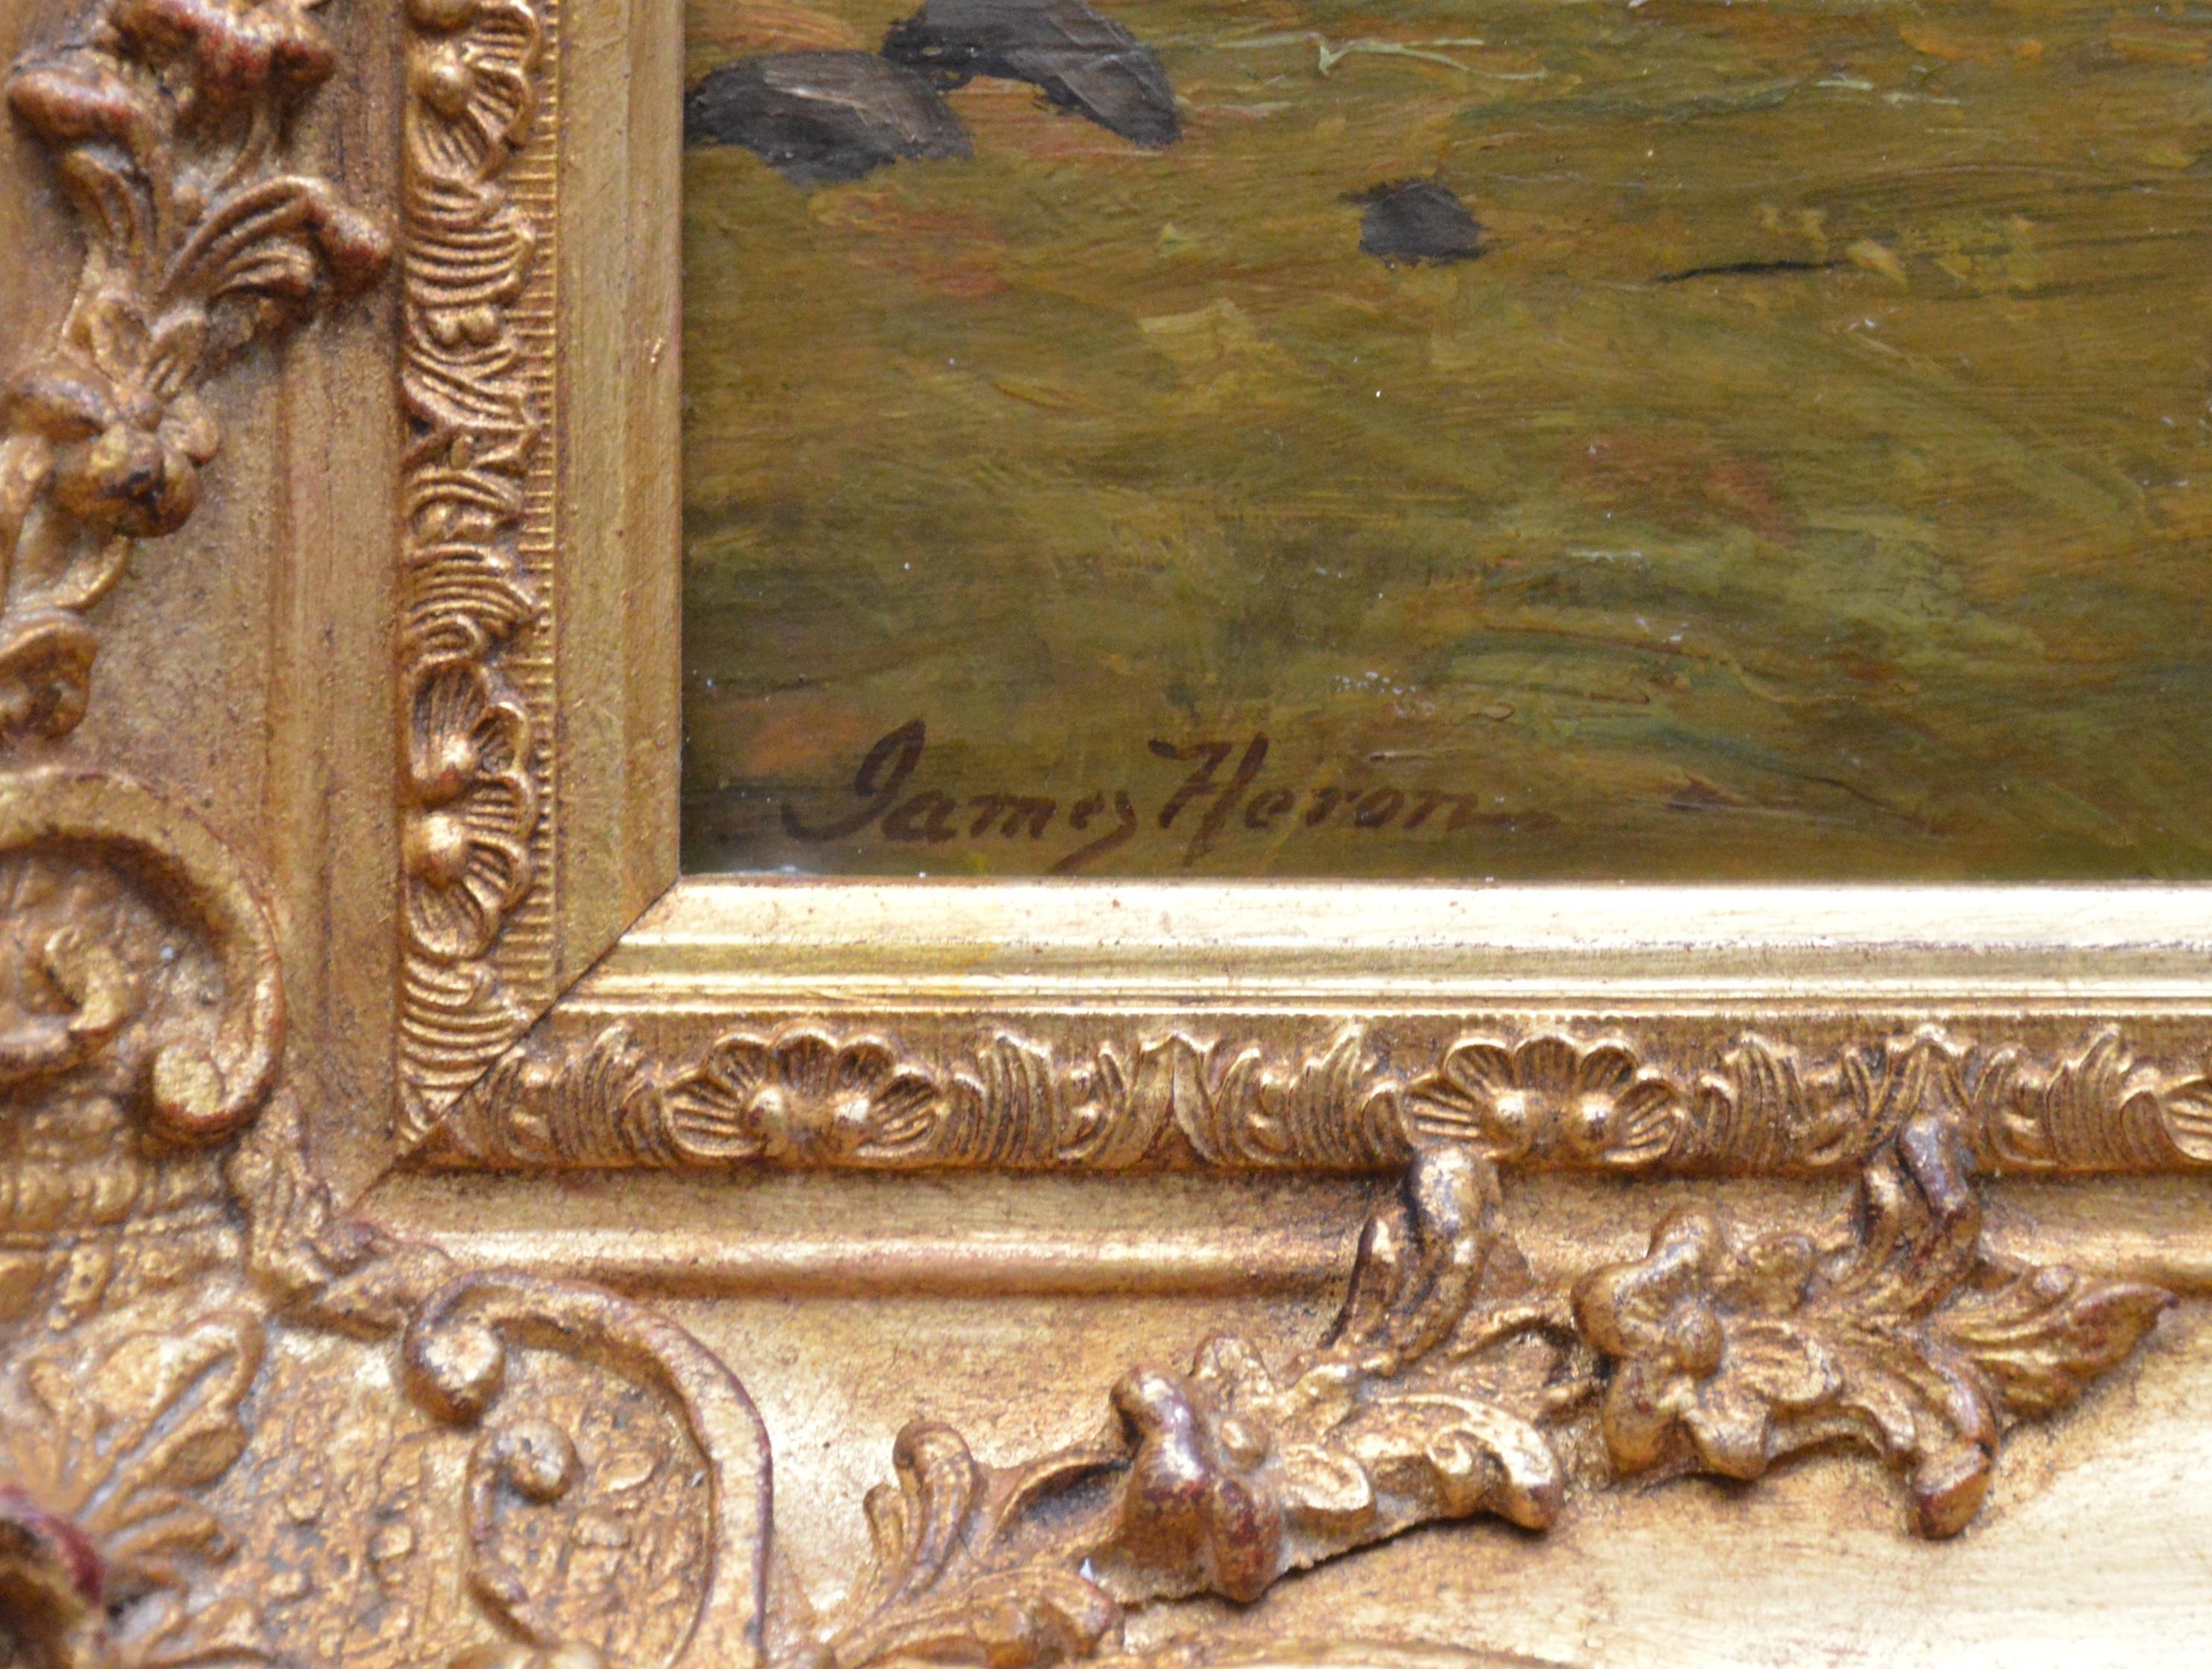 Loch Ard from Aberfoyle - Paysage écossais du 19ème siècle - Peinture à l'huile 3